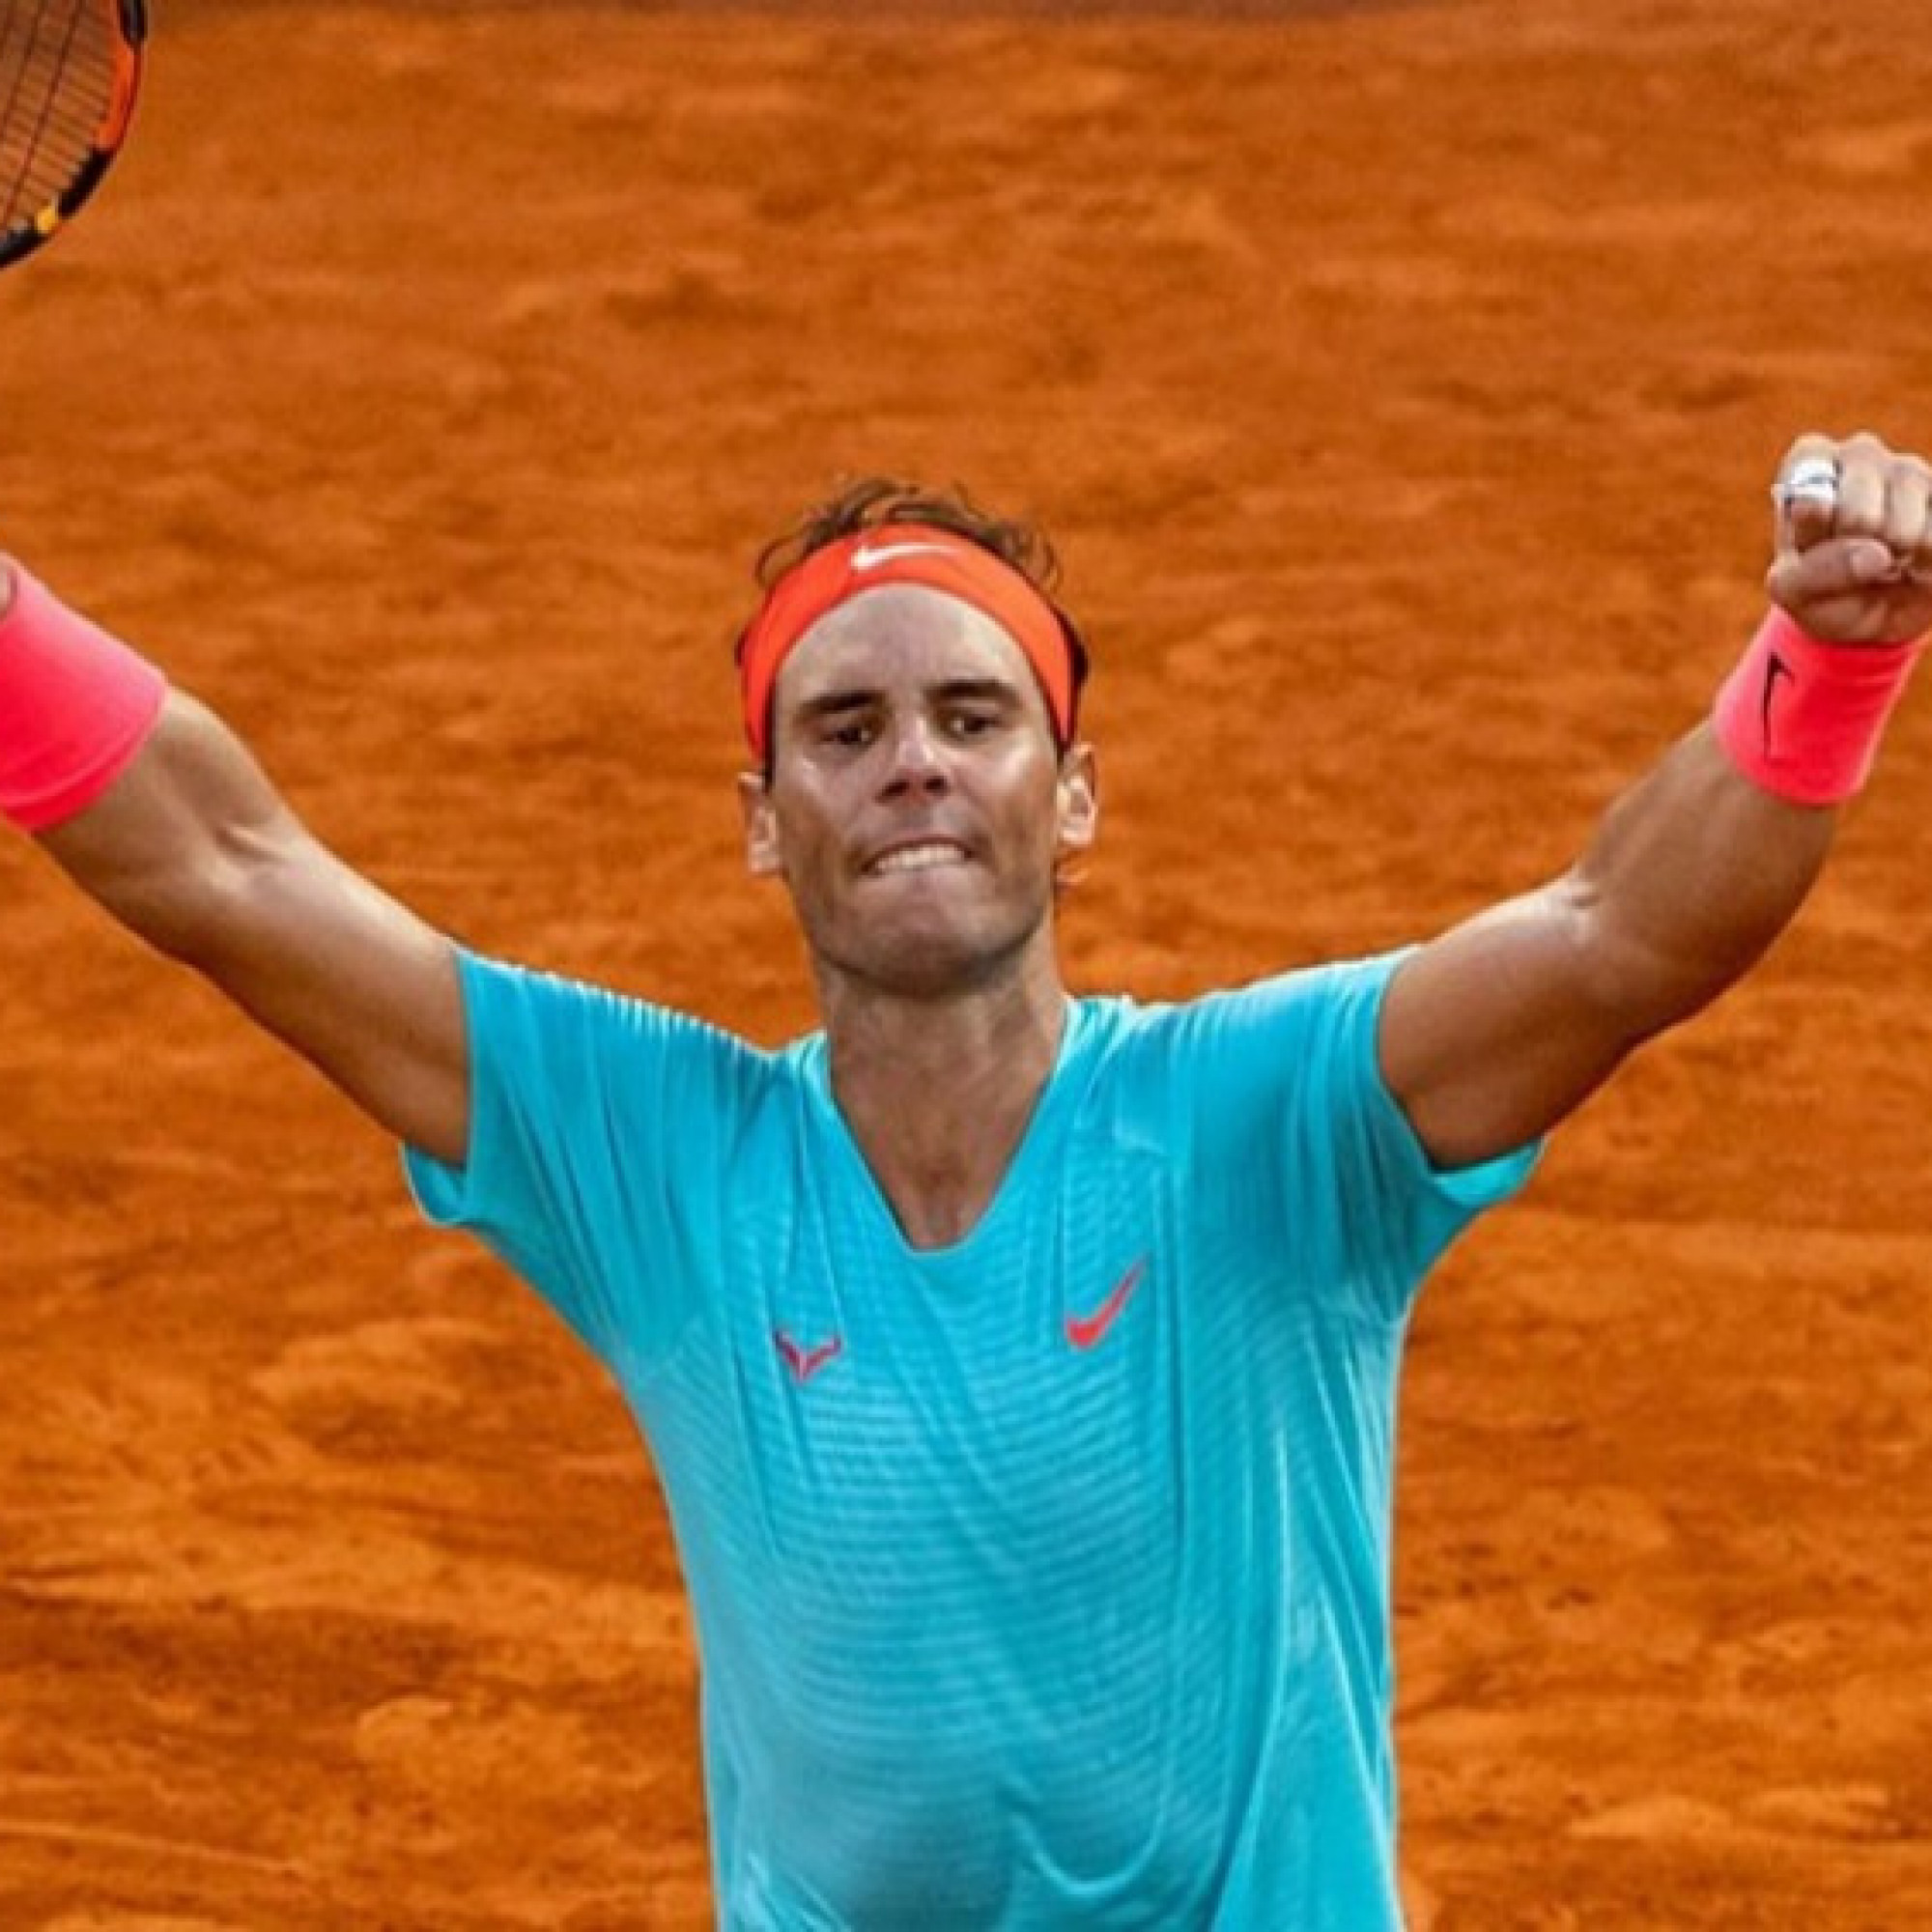  - Nóng nhất thể thao sáng 20/4: Thầy cũ Djokovic đánh giá thấp Nadal, khó tranh Roland Garros